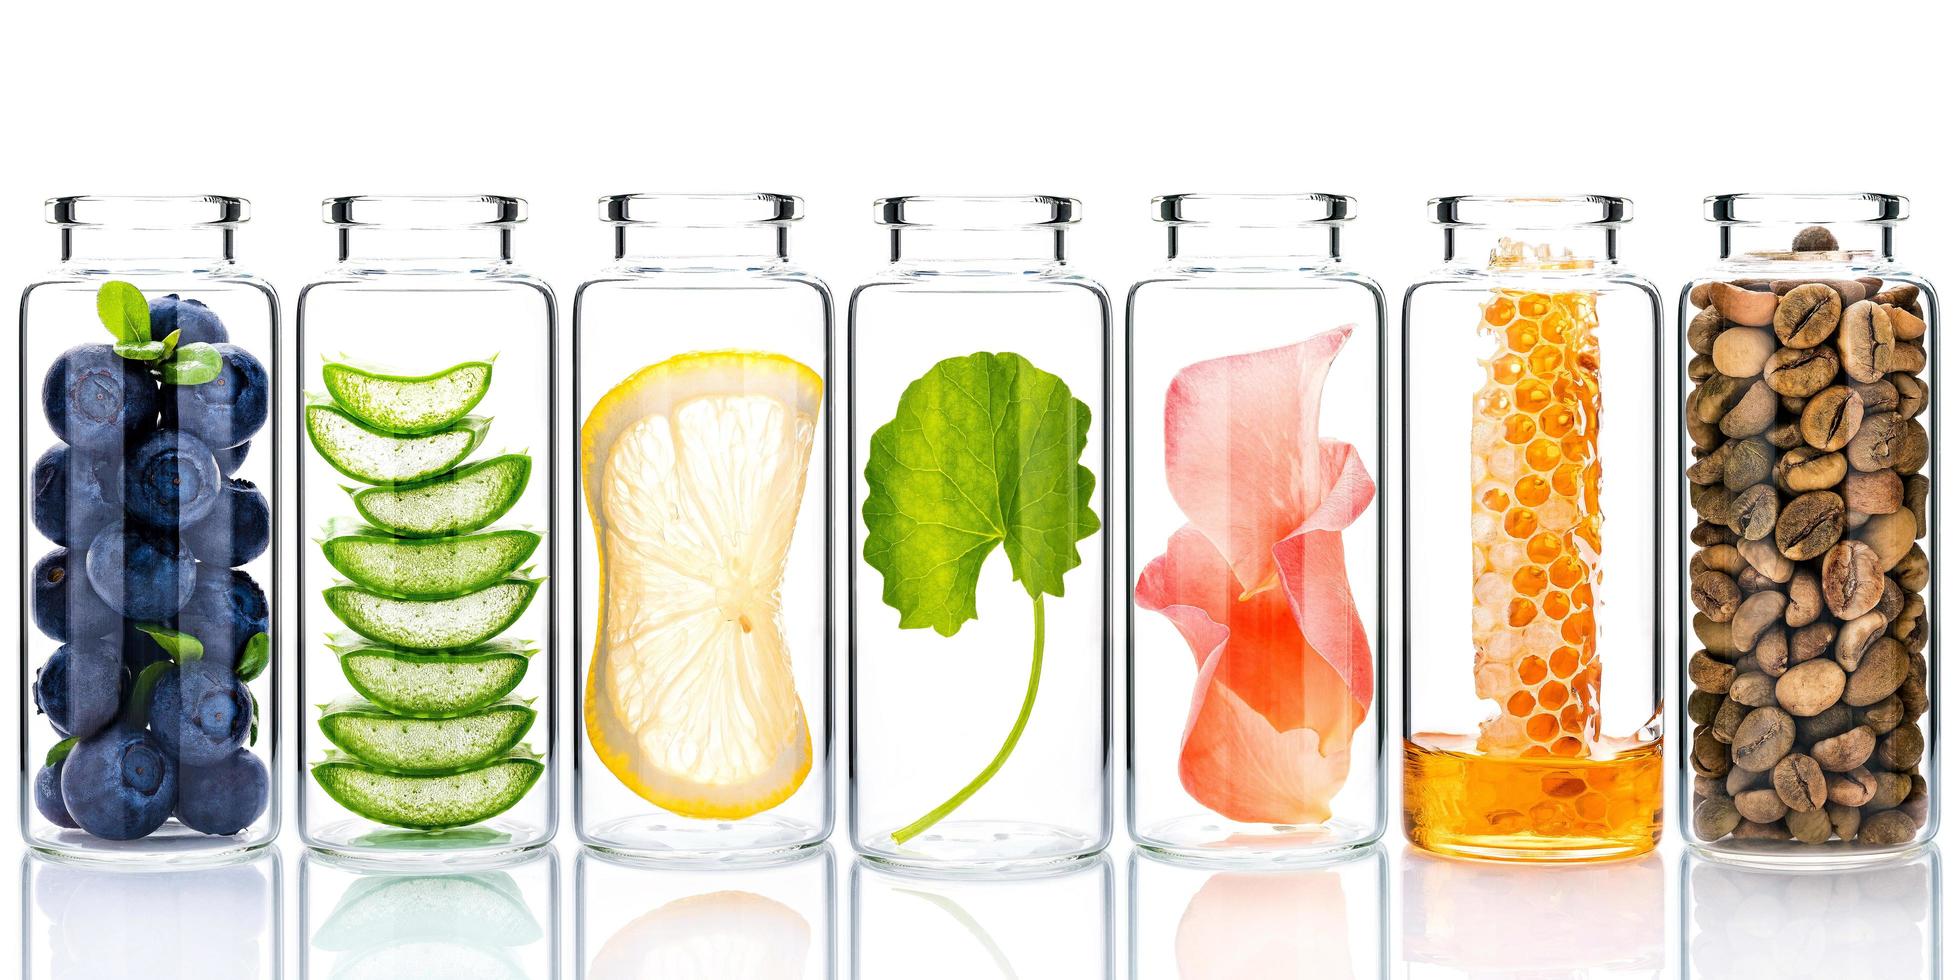 cura della pelle fatta in casa con ingredienti naturali ed erbe in bottiglie di vetro isolato su uno sfondo bianco foto